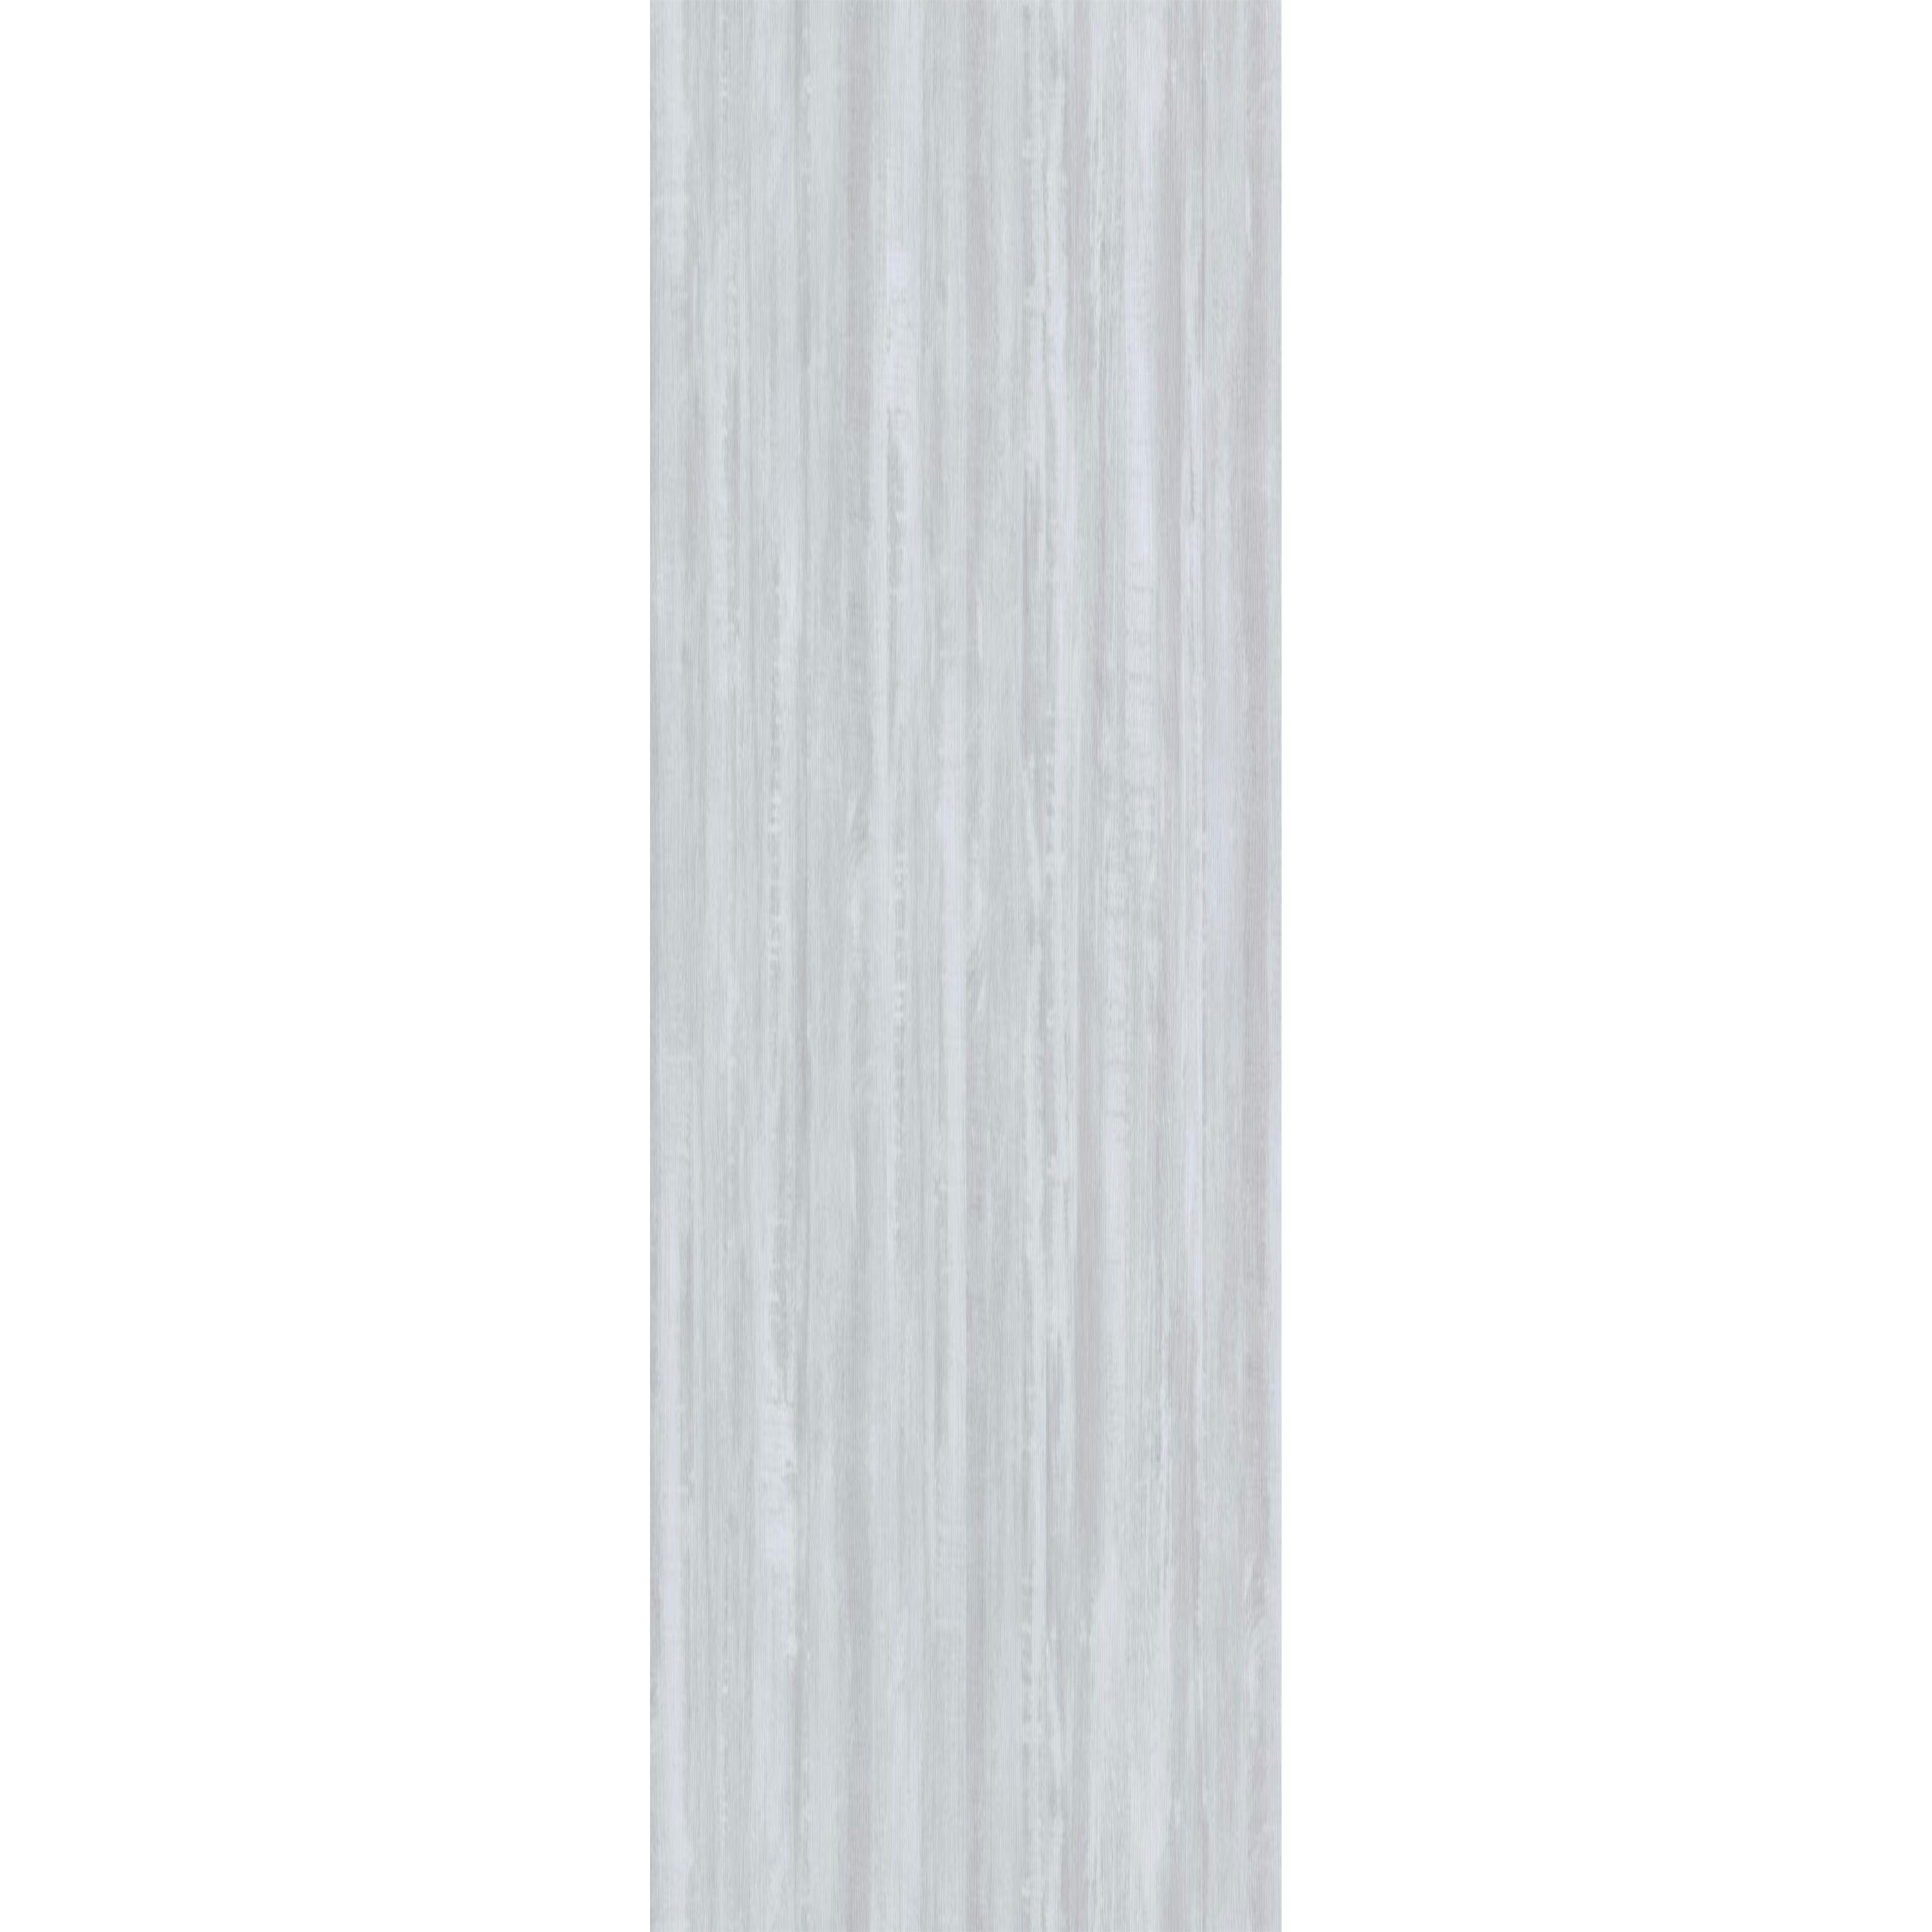 Vinylboden Klicksystem Snowwood Weiss 17,2x121cm